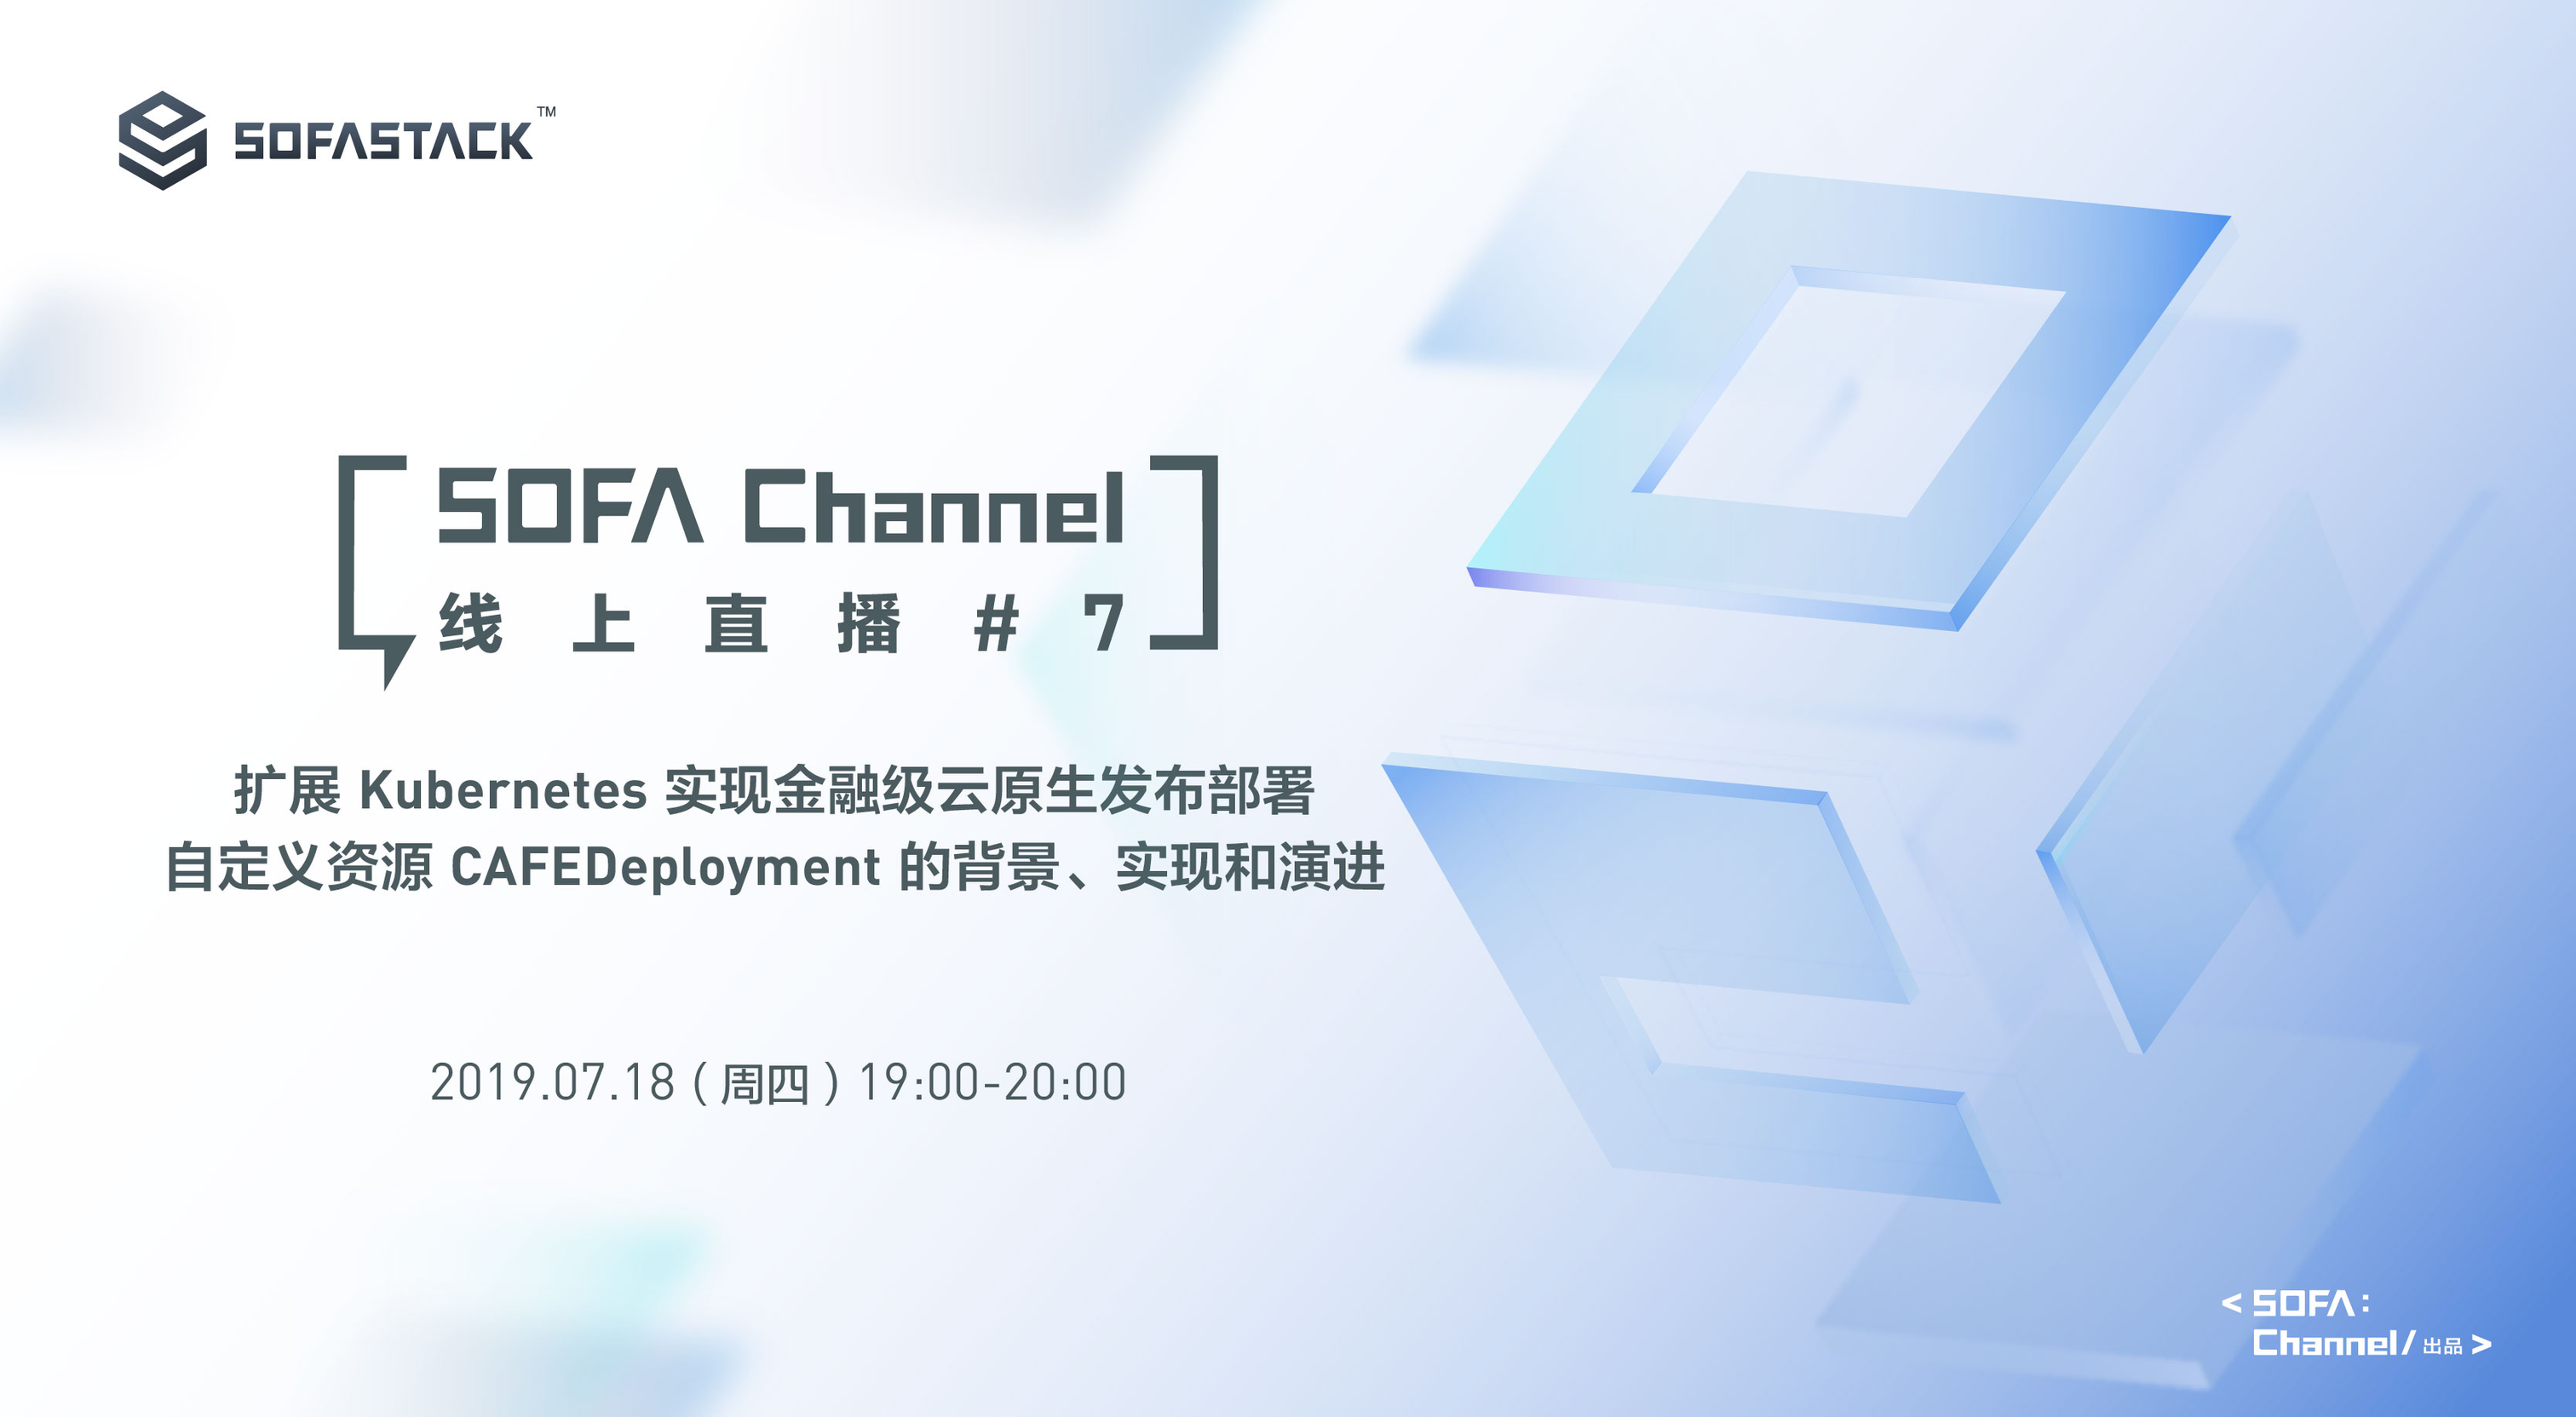 channel7-banner-service-03.jpg